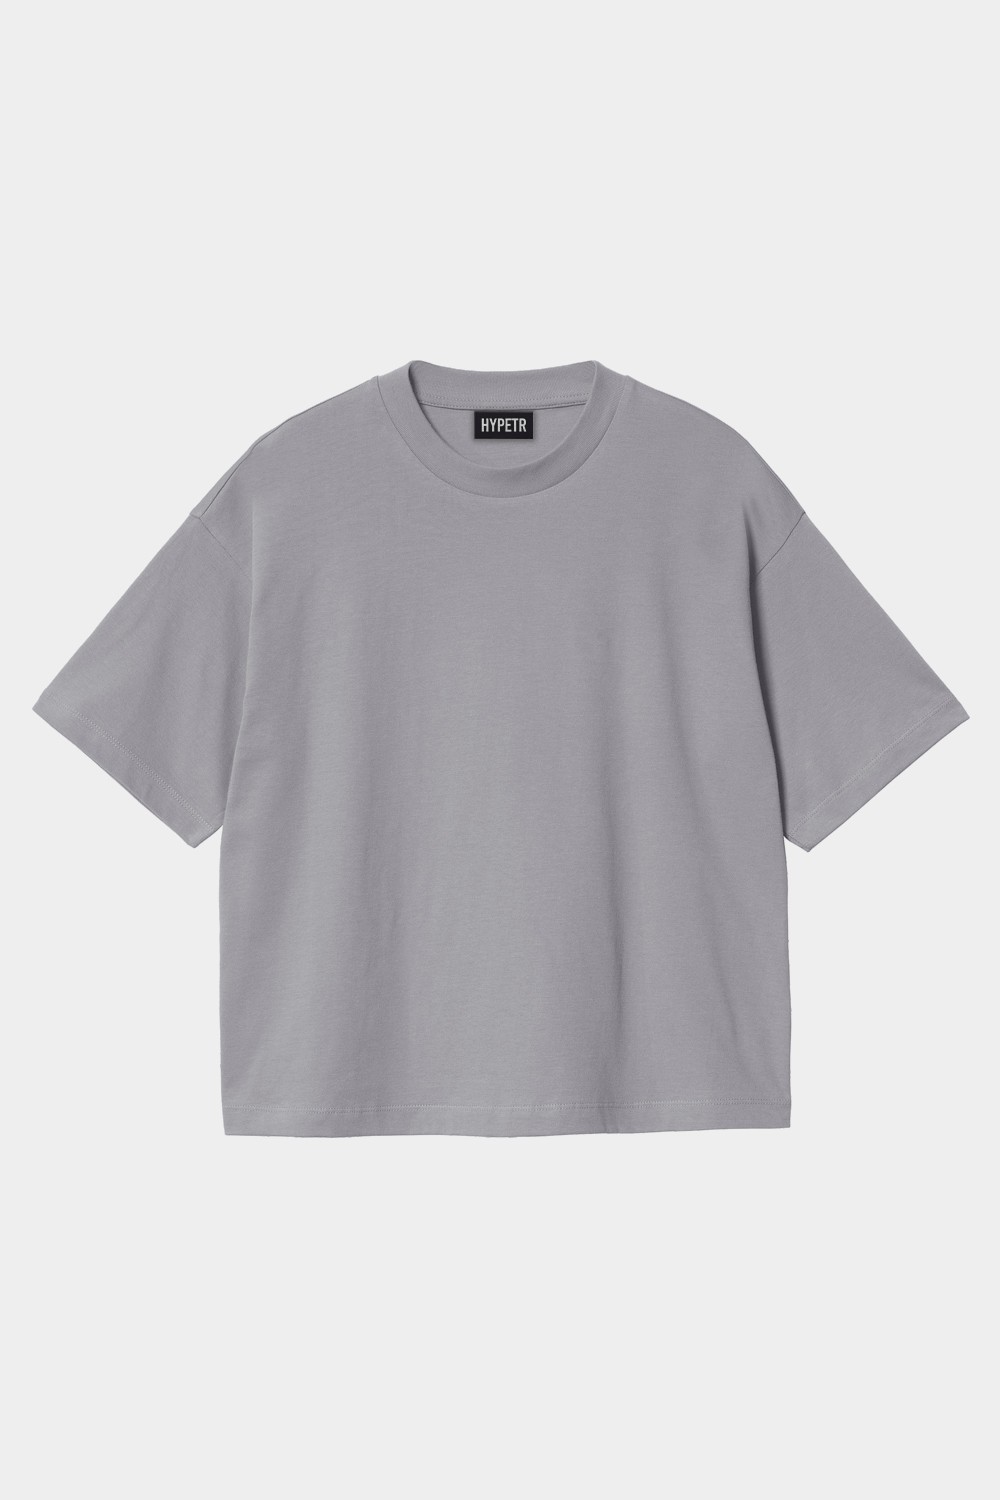 Oversized Basic T Shirt (HYPE-11)